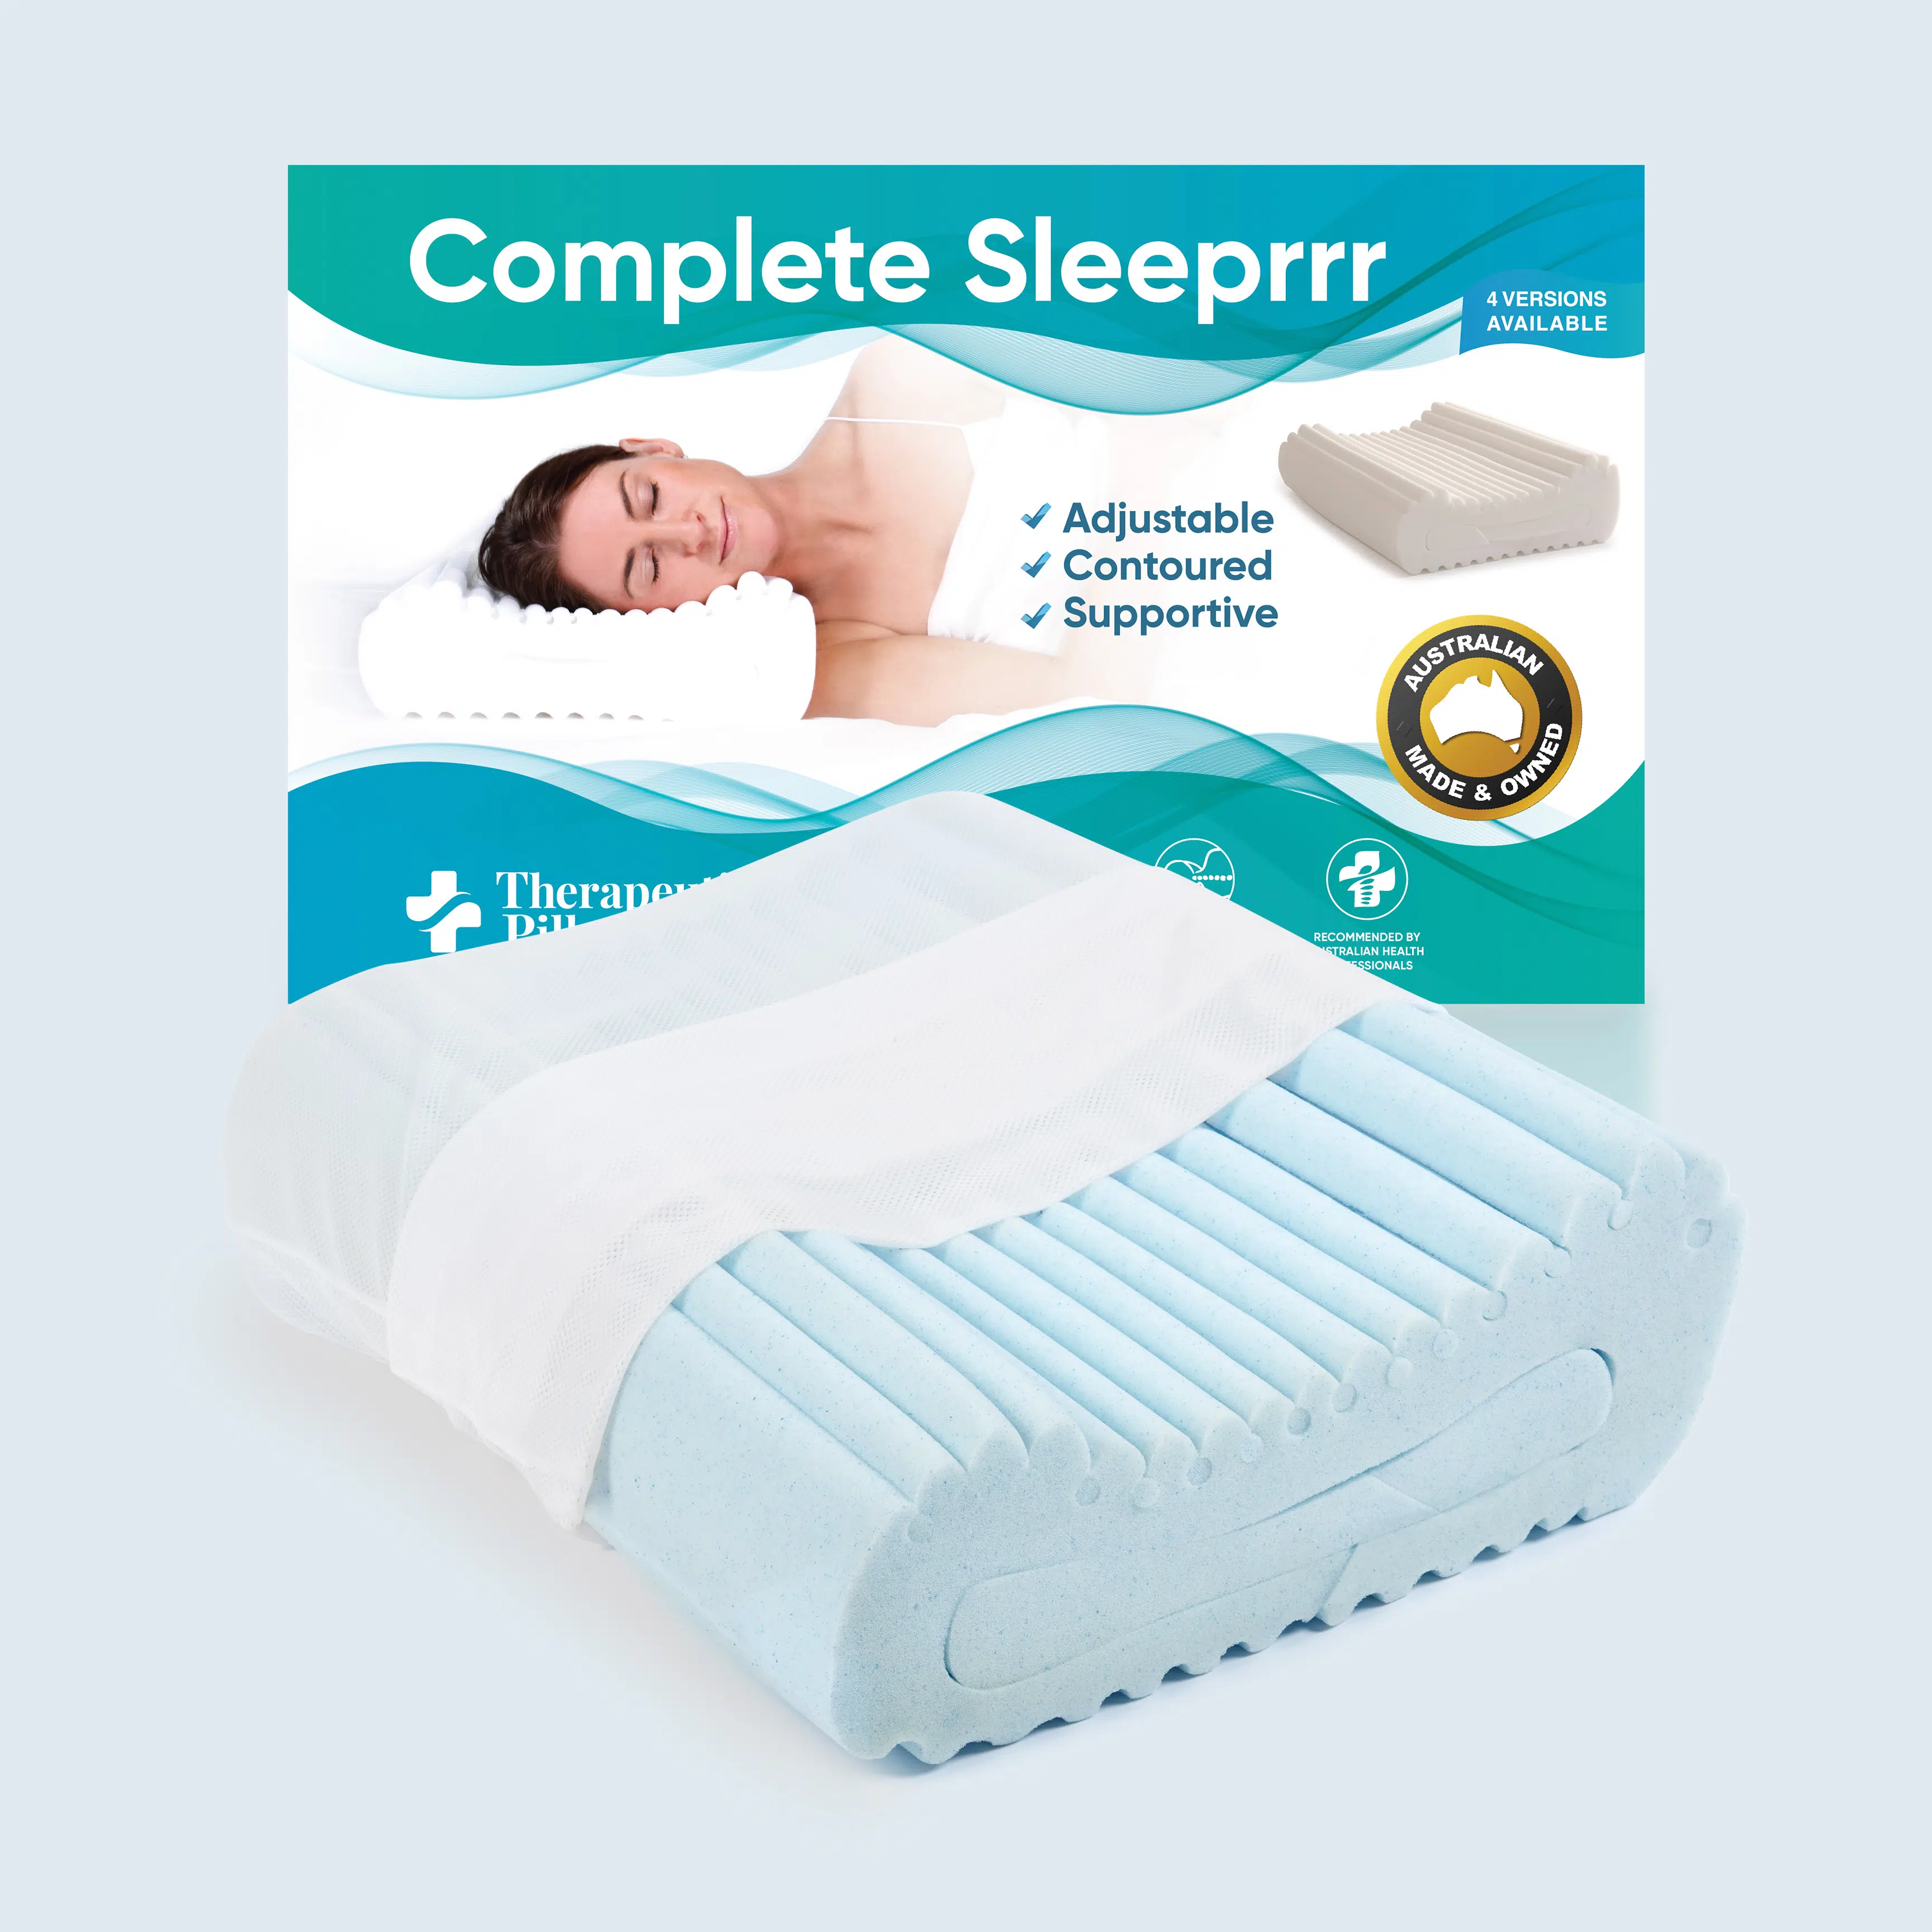 Complete Sleeprrr GelInfused Memory Foam Pillow